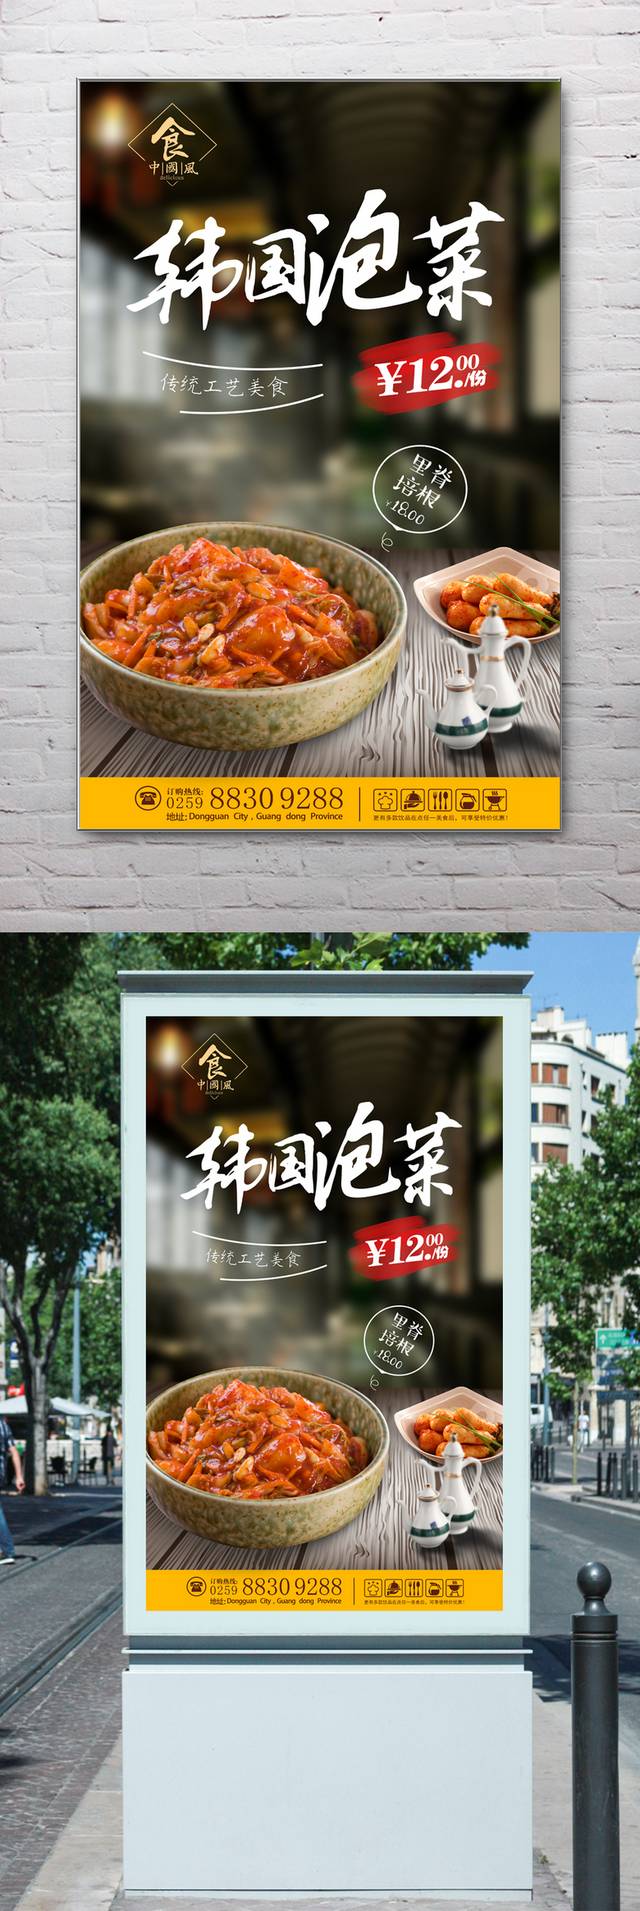 韩国泡菜宣传海报设计